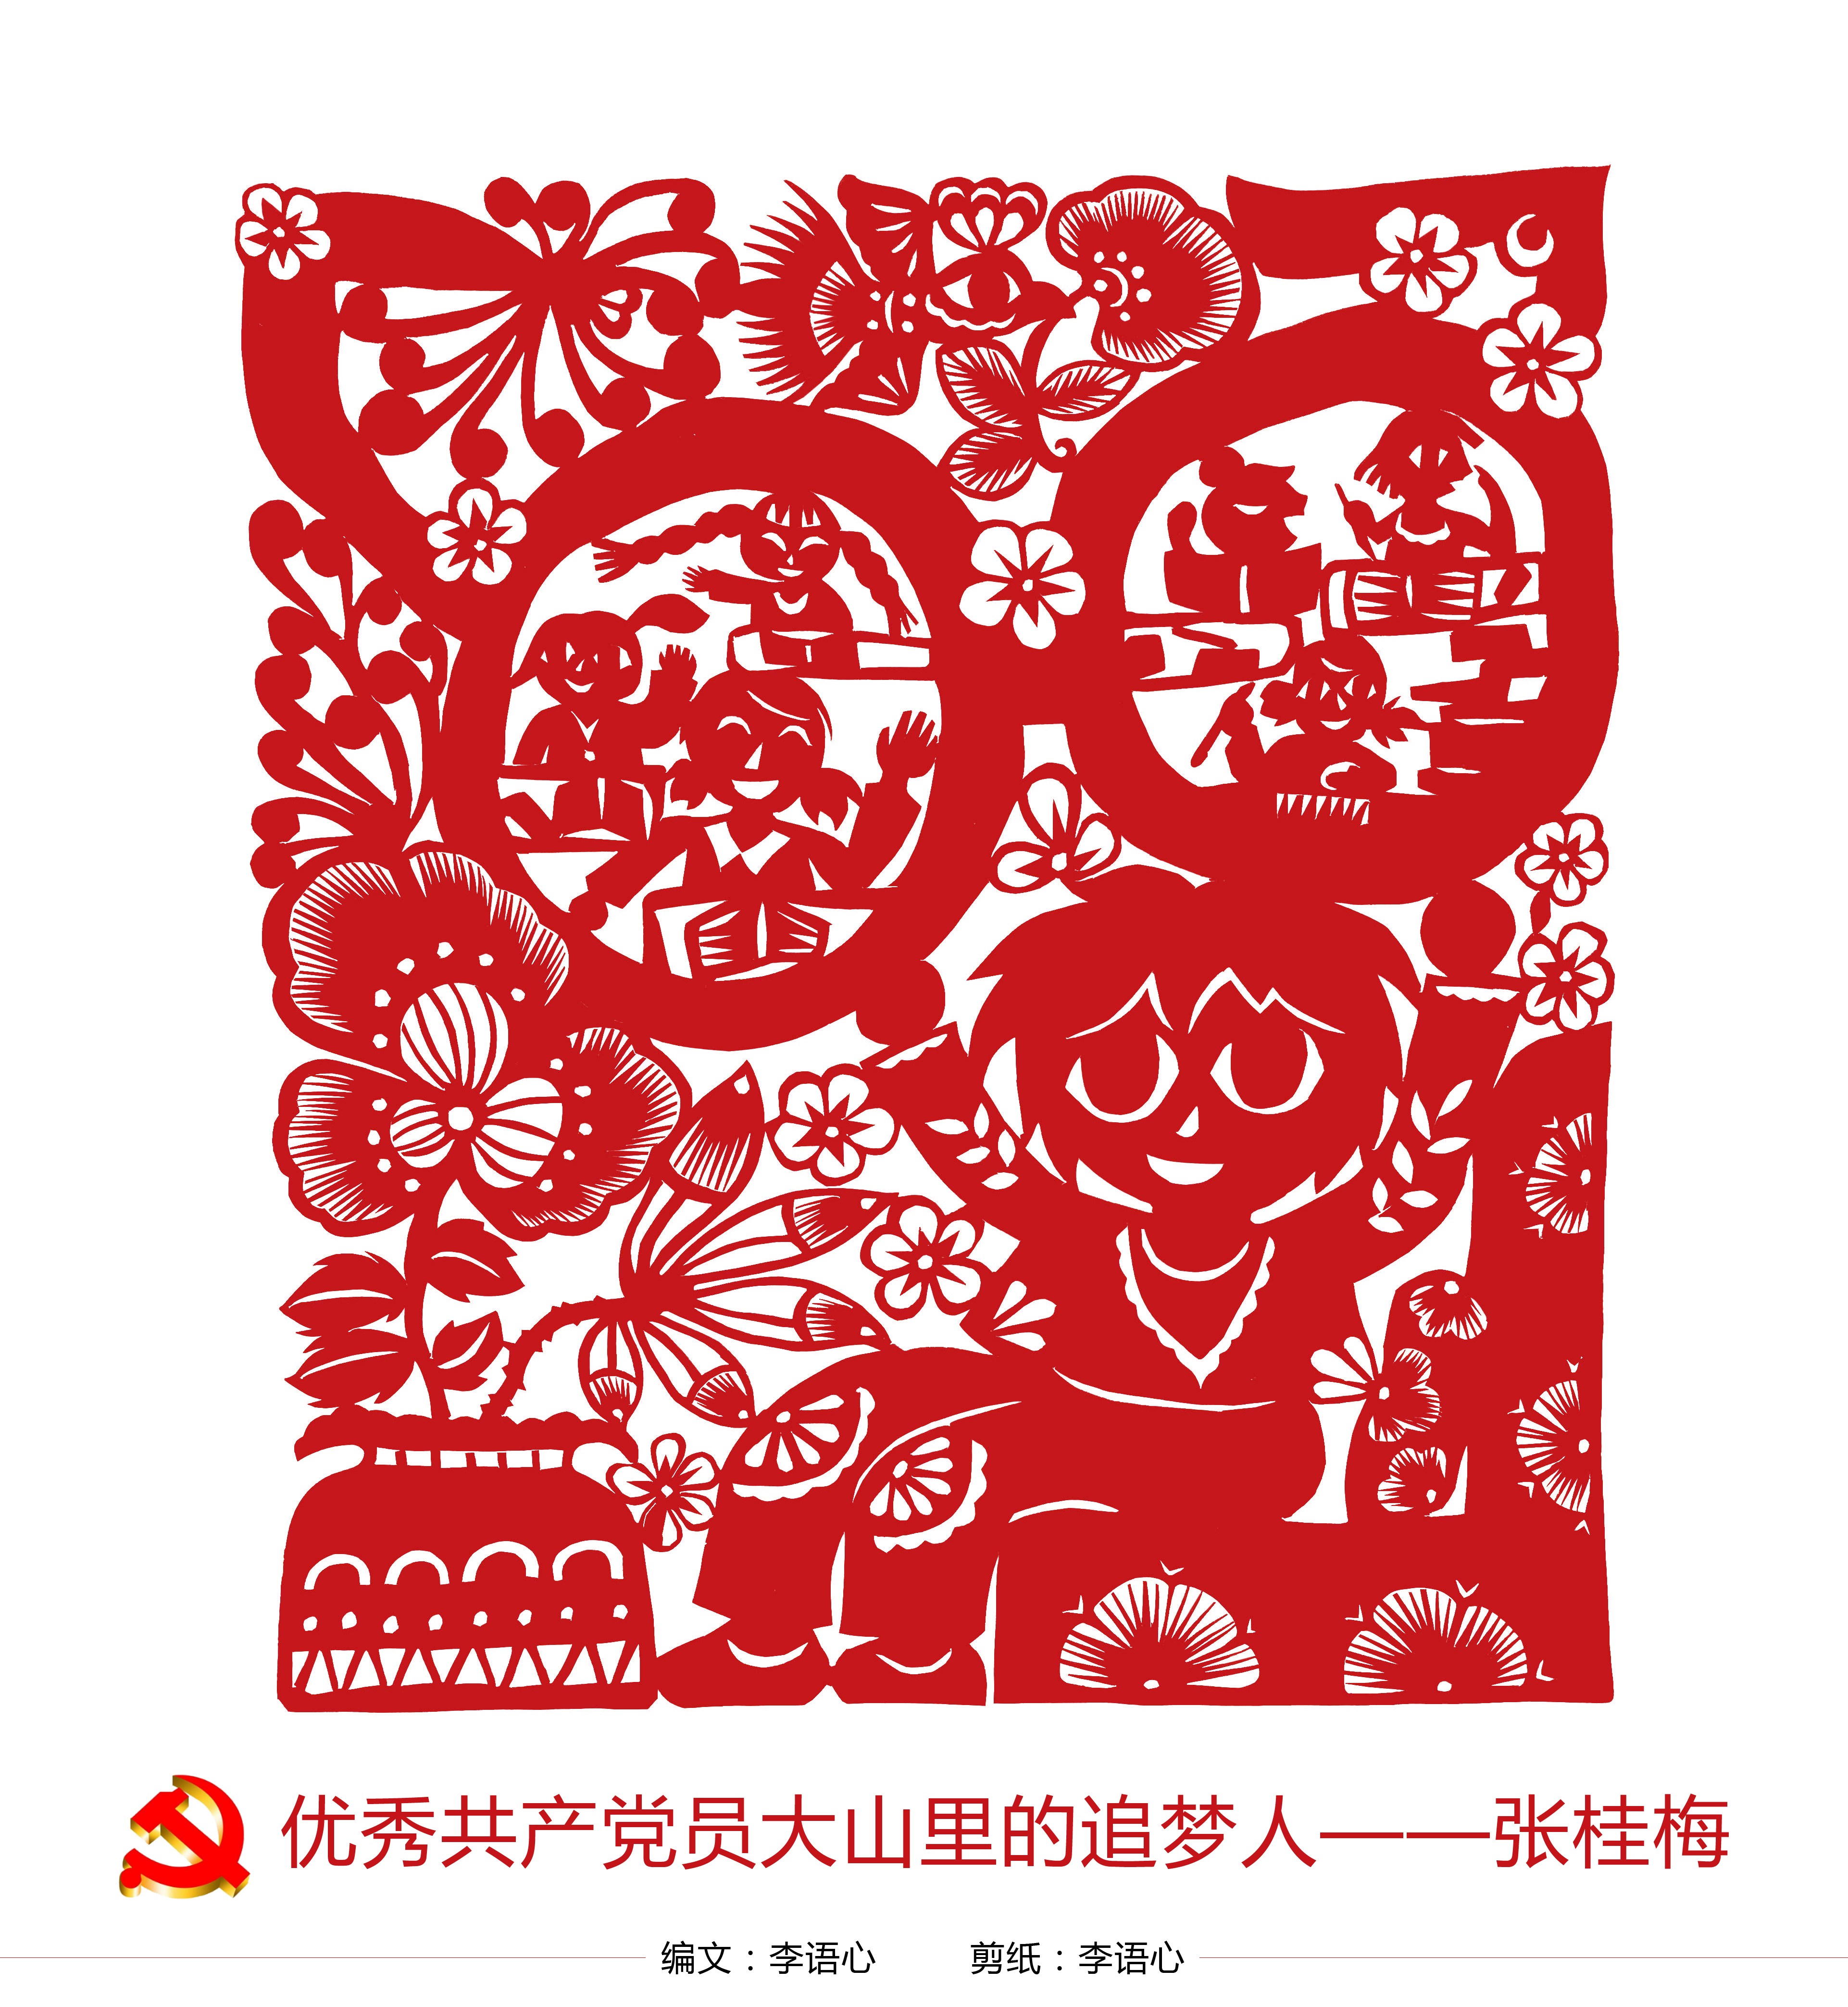 小小传承人剪纸作品致敬感动中国十大人物主人公张桂梅